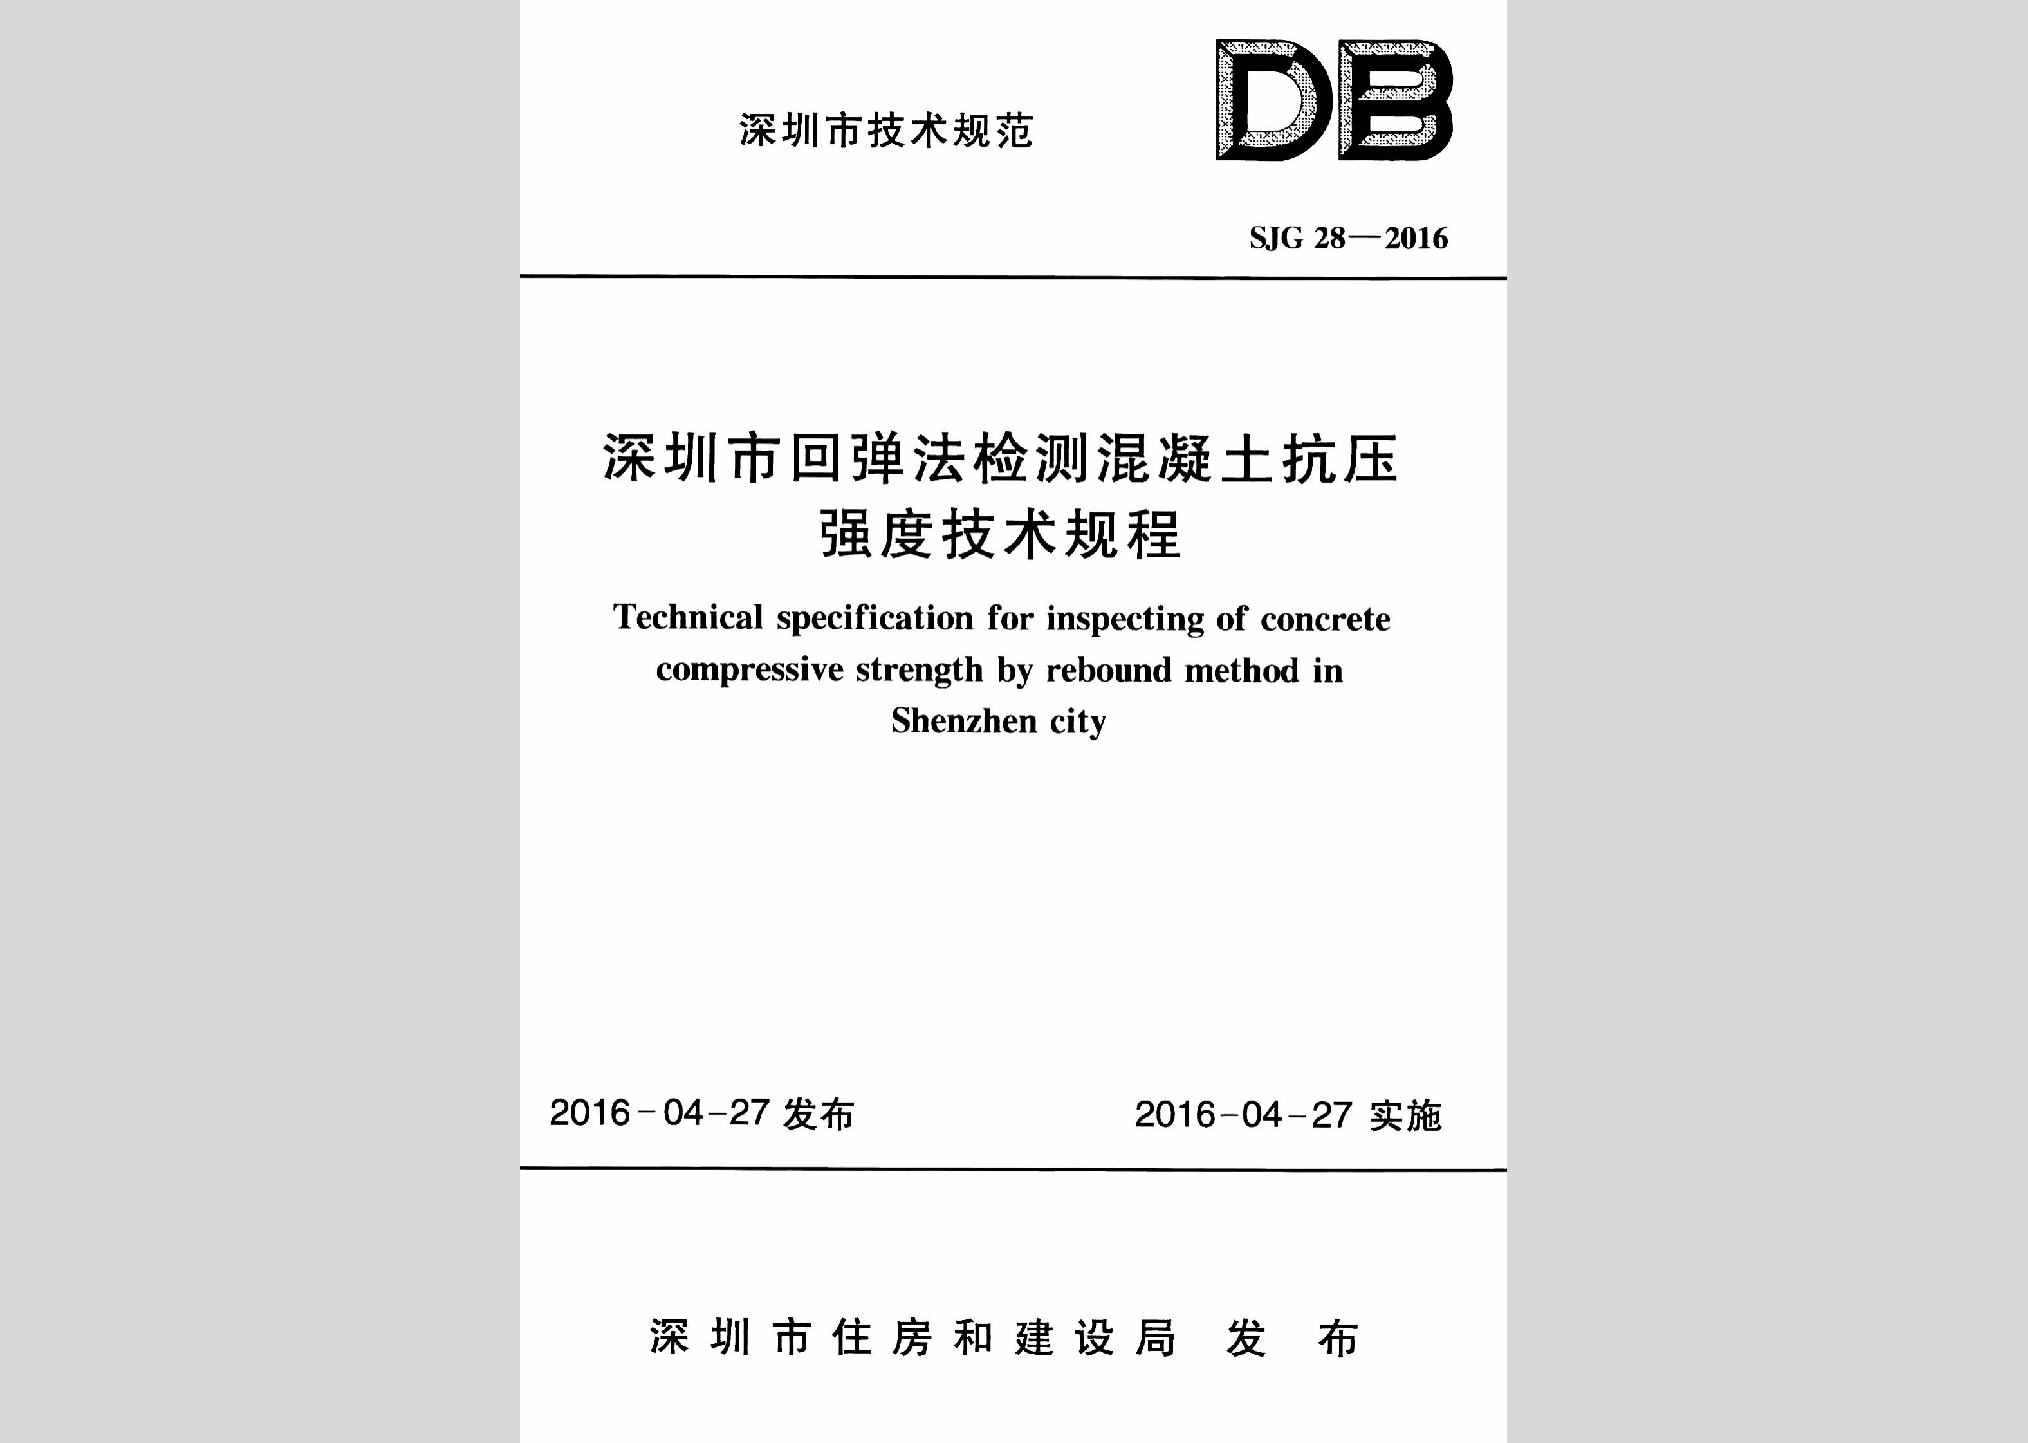 SJG28-2016：深圳市回弹法检测混凝土抗压强度技术规程